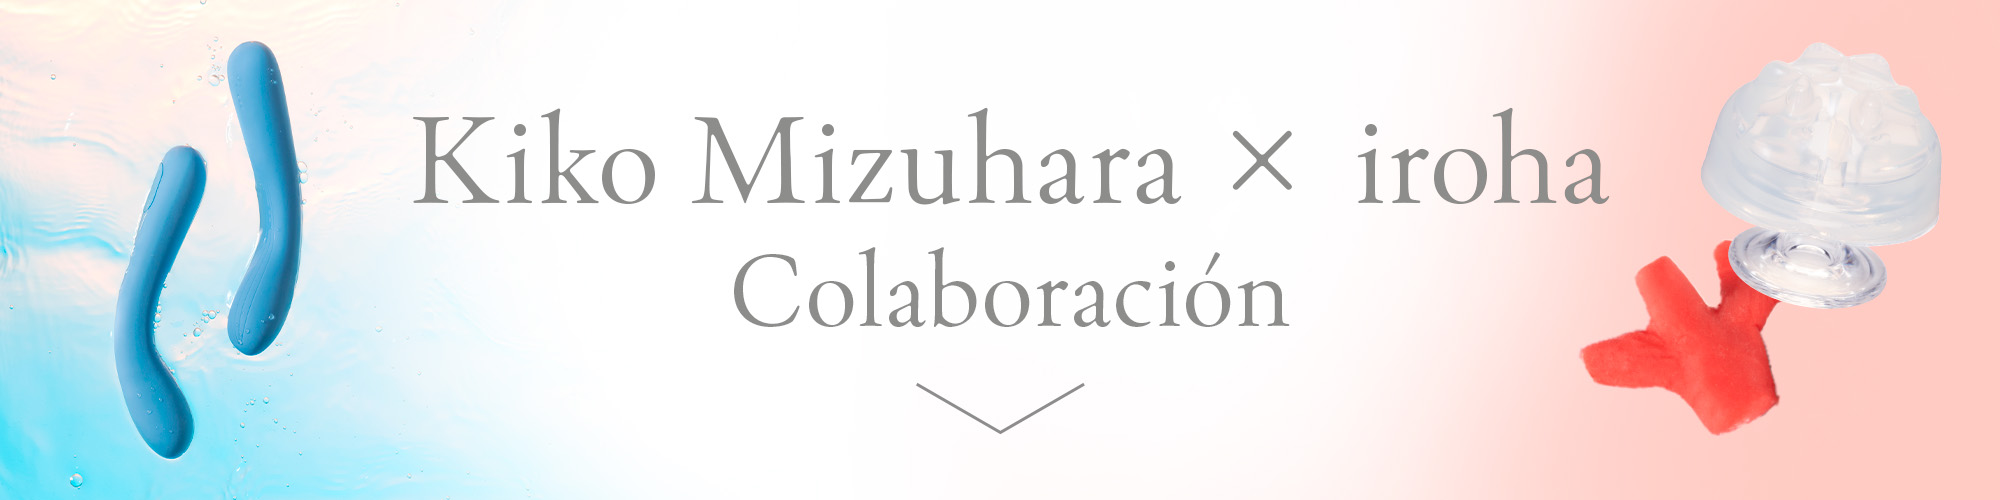 iroha × Kiko Mizuhara Collaboration